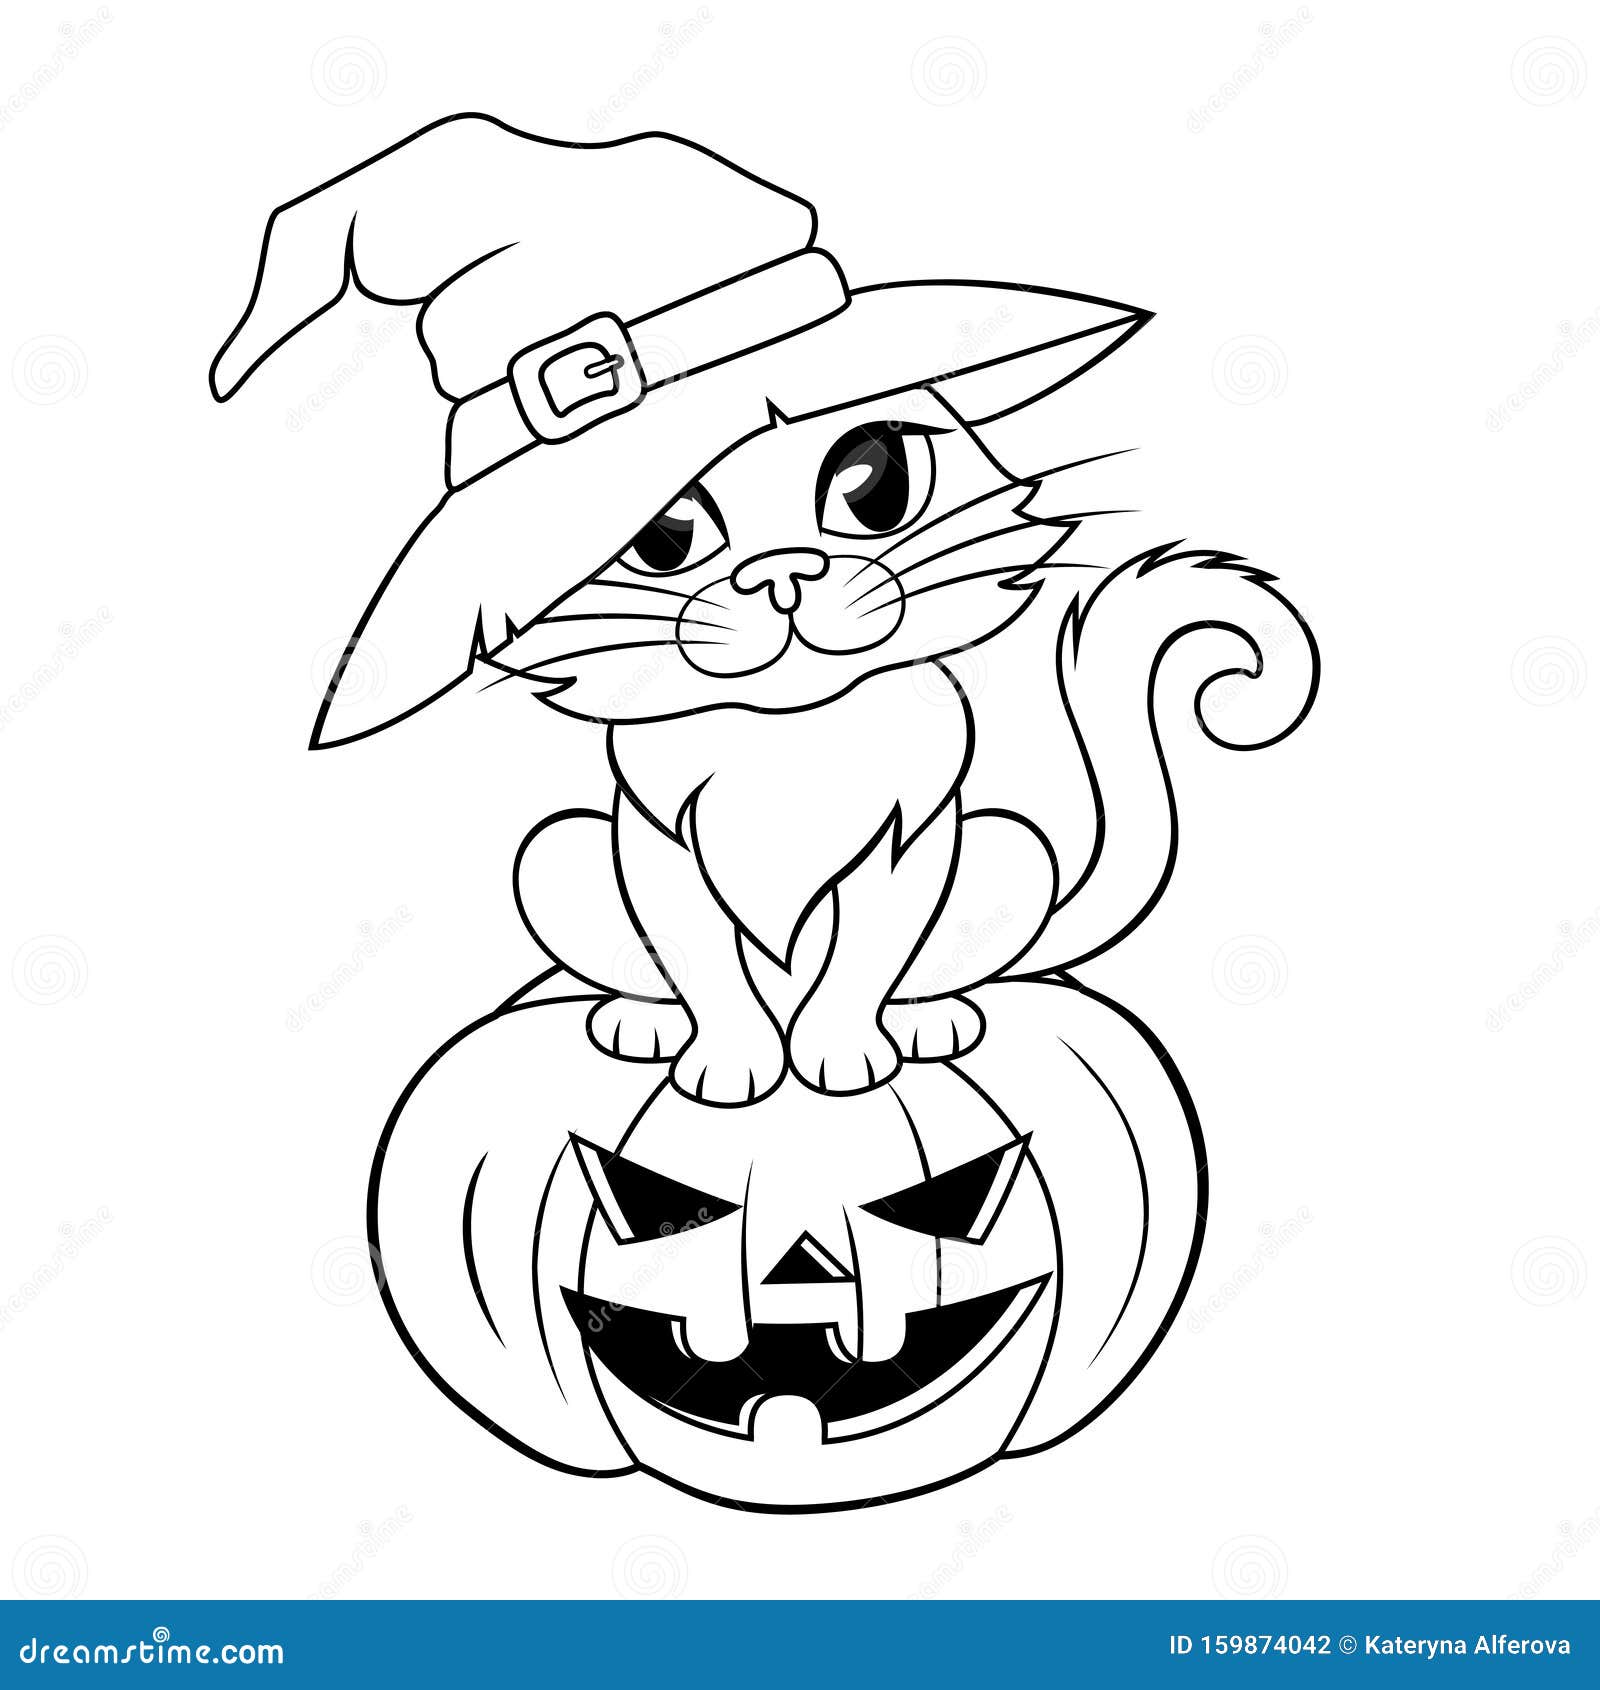 Pumpkin coloring stock illustrations â pumpkin coloring stock illustrations vectors clipart